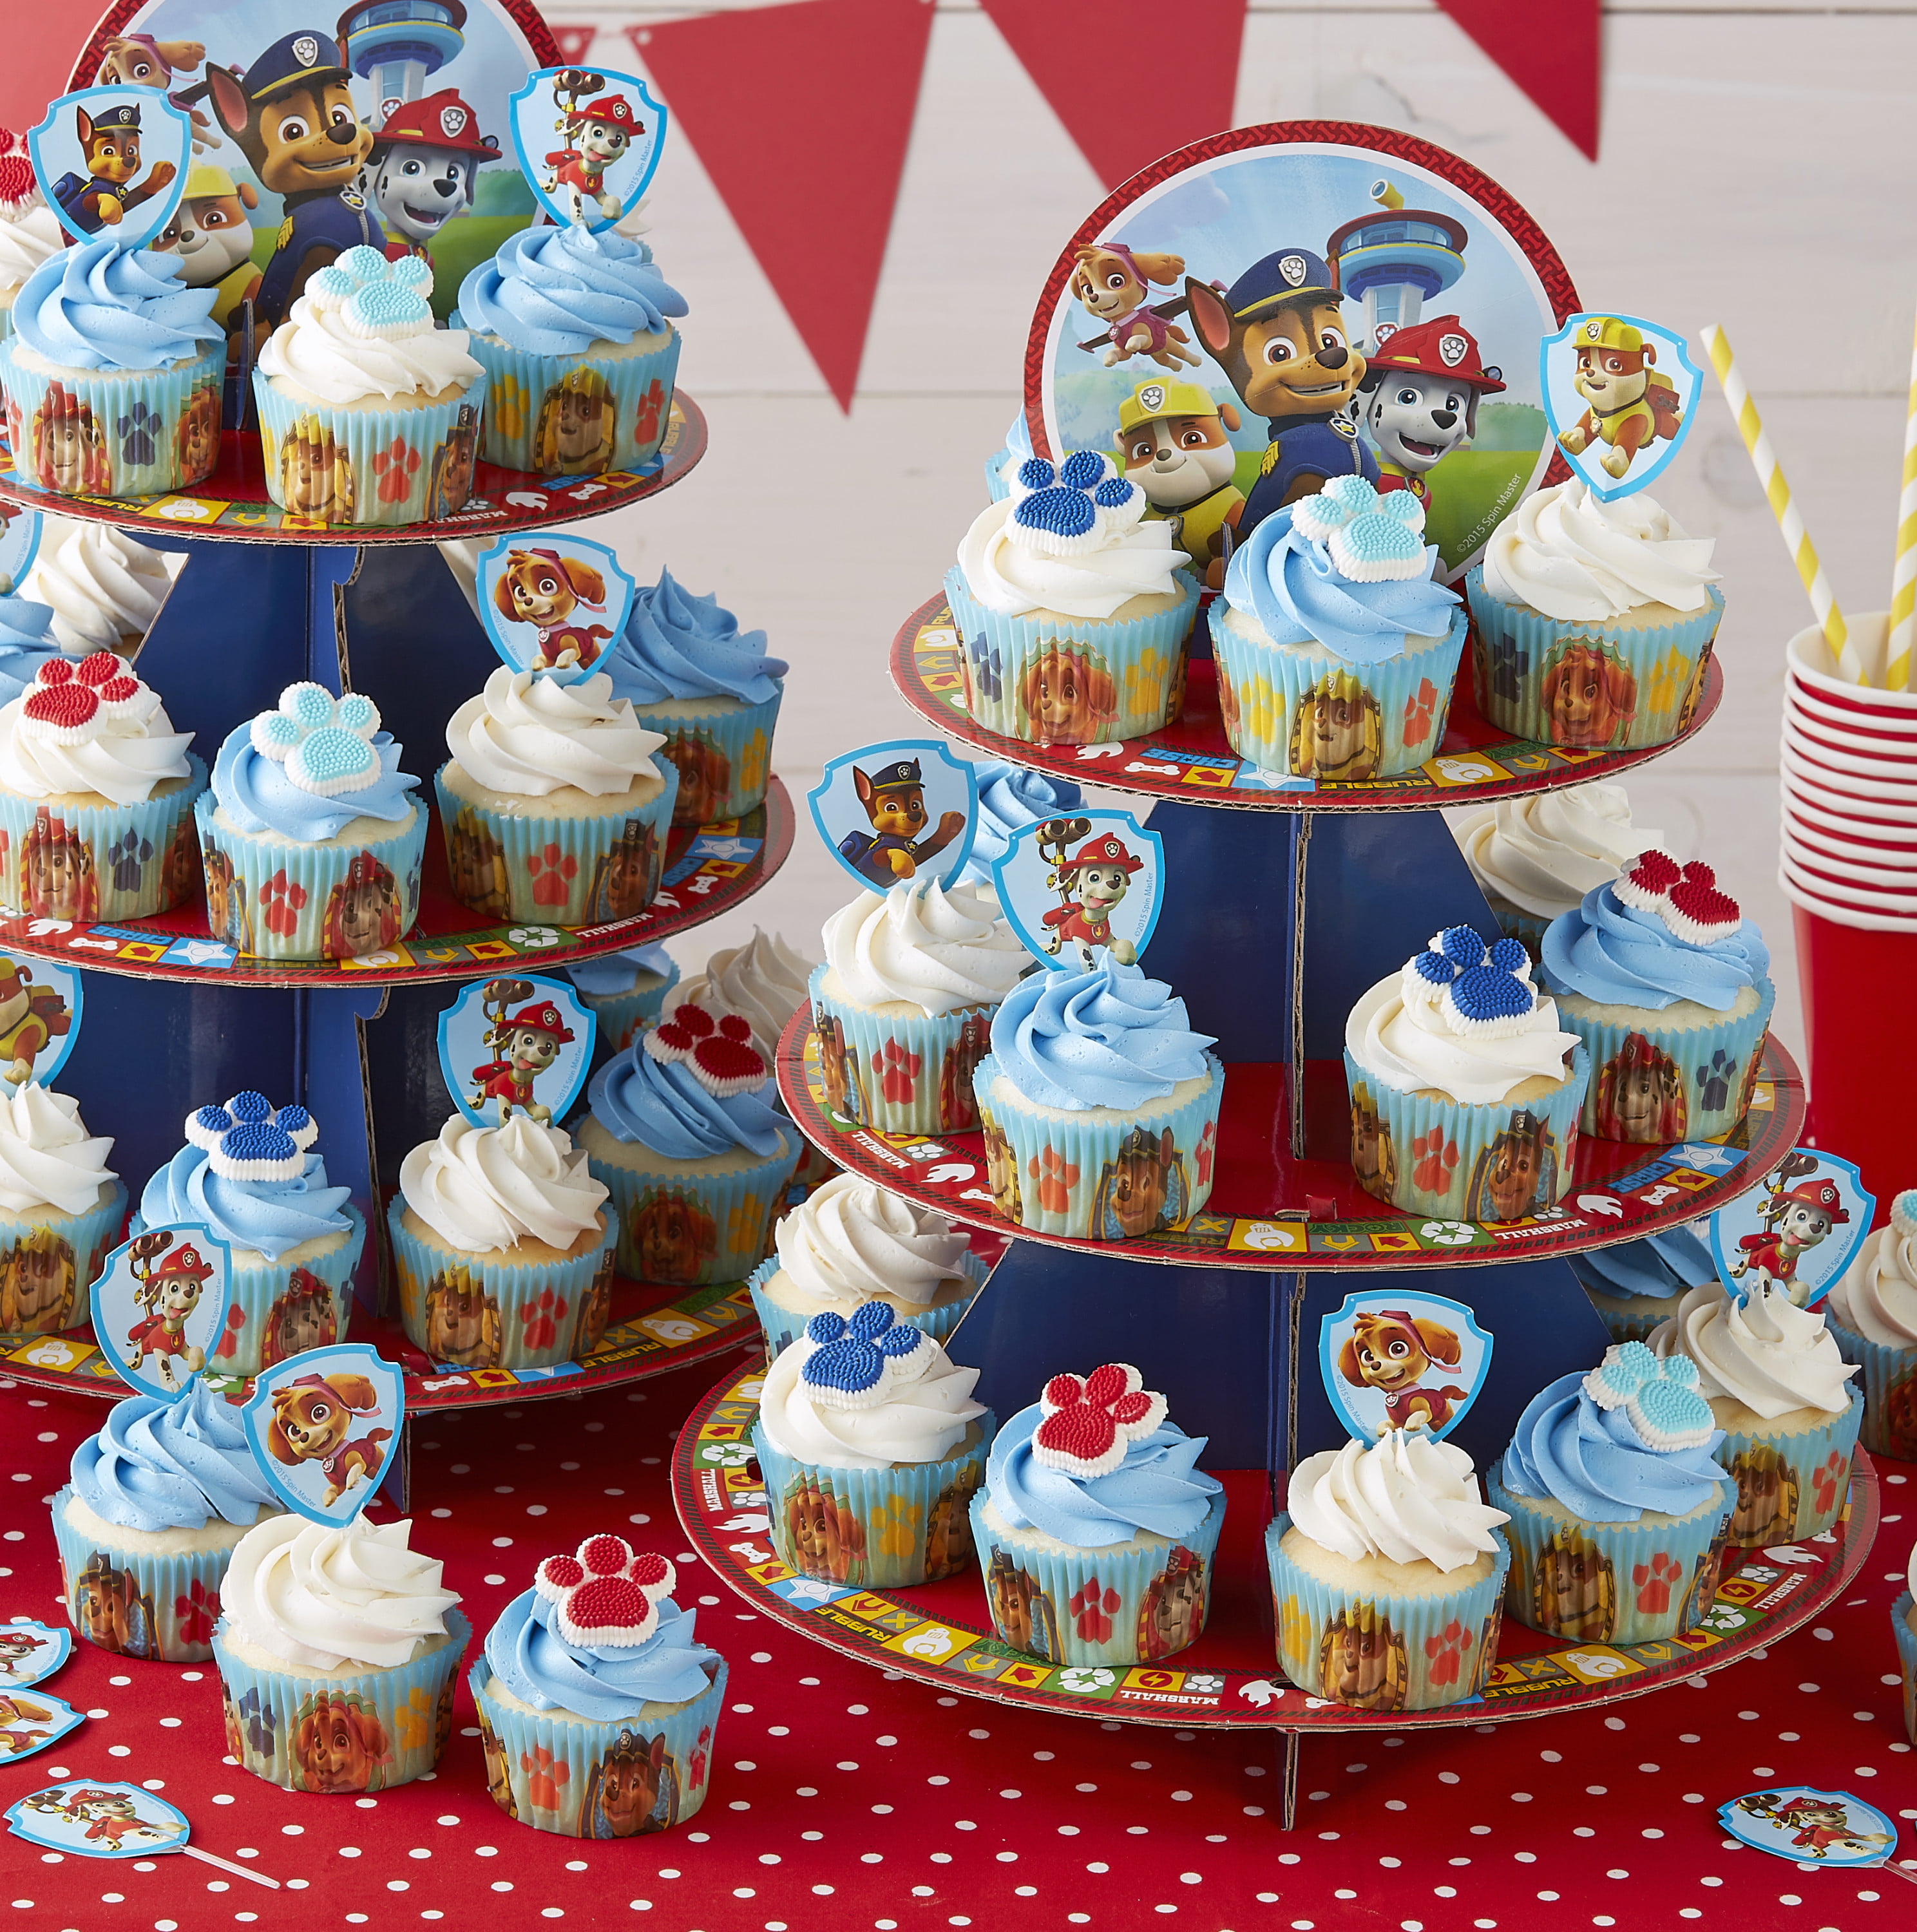 Entrega rápida Paw Patrol Cupcake Muffin titular de soporte de Chase Pastel  Fiesta Cumpleaños Decoración Minorista de compras en línea Compras  satisfechas